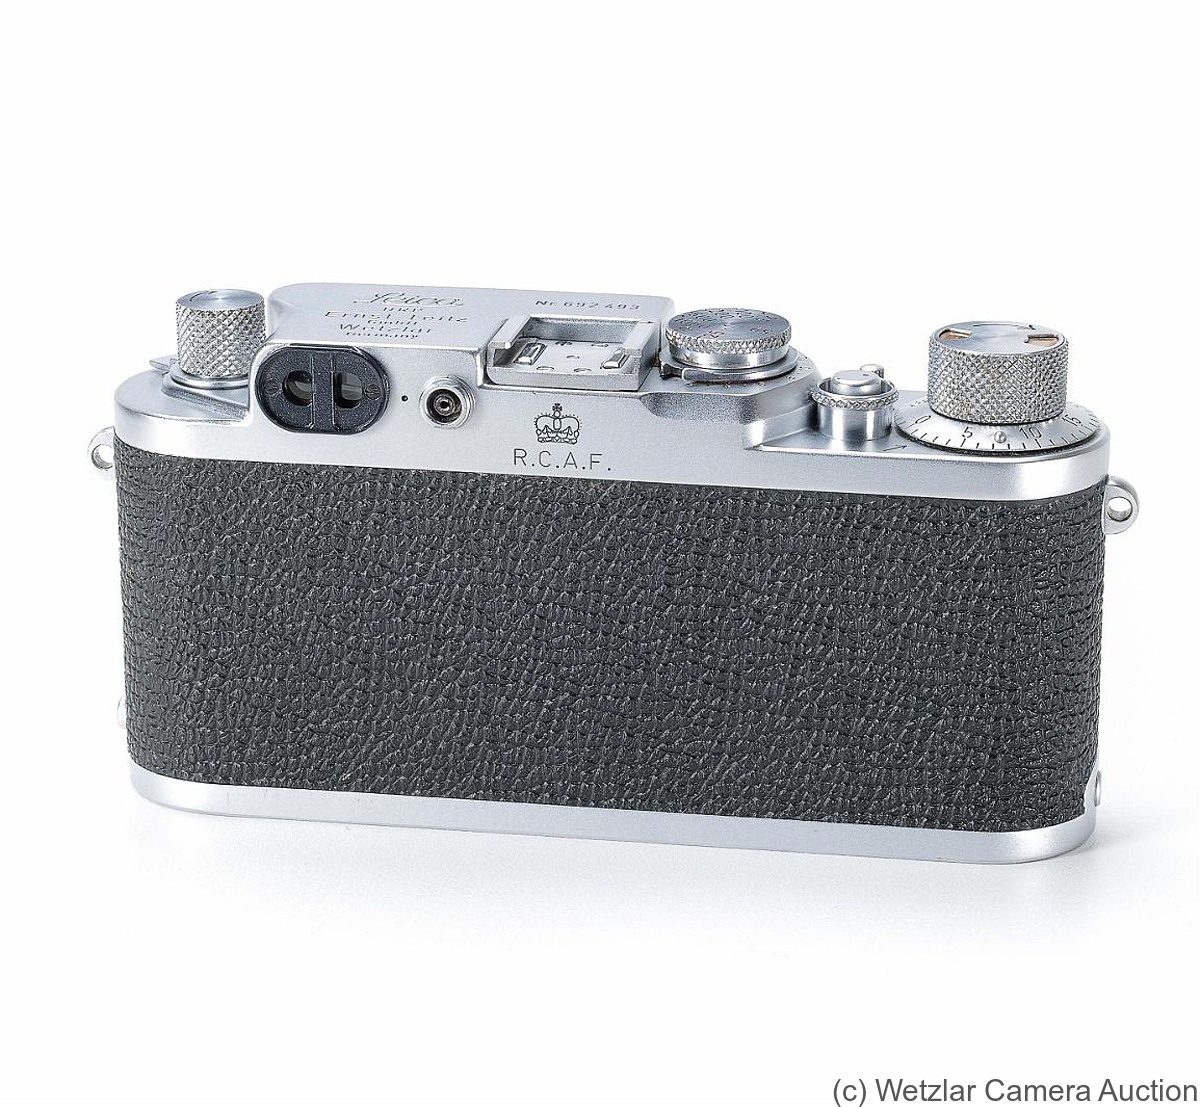 Leitz: Leica IIIf 'R.C.A.F.' camera